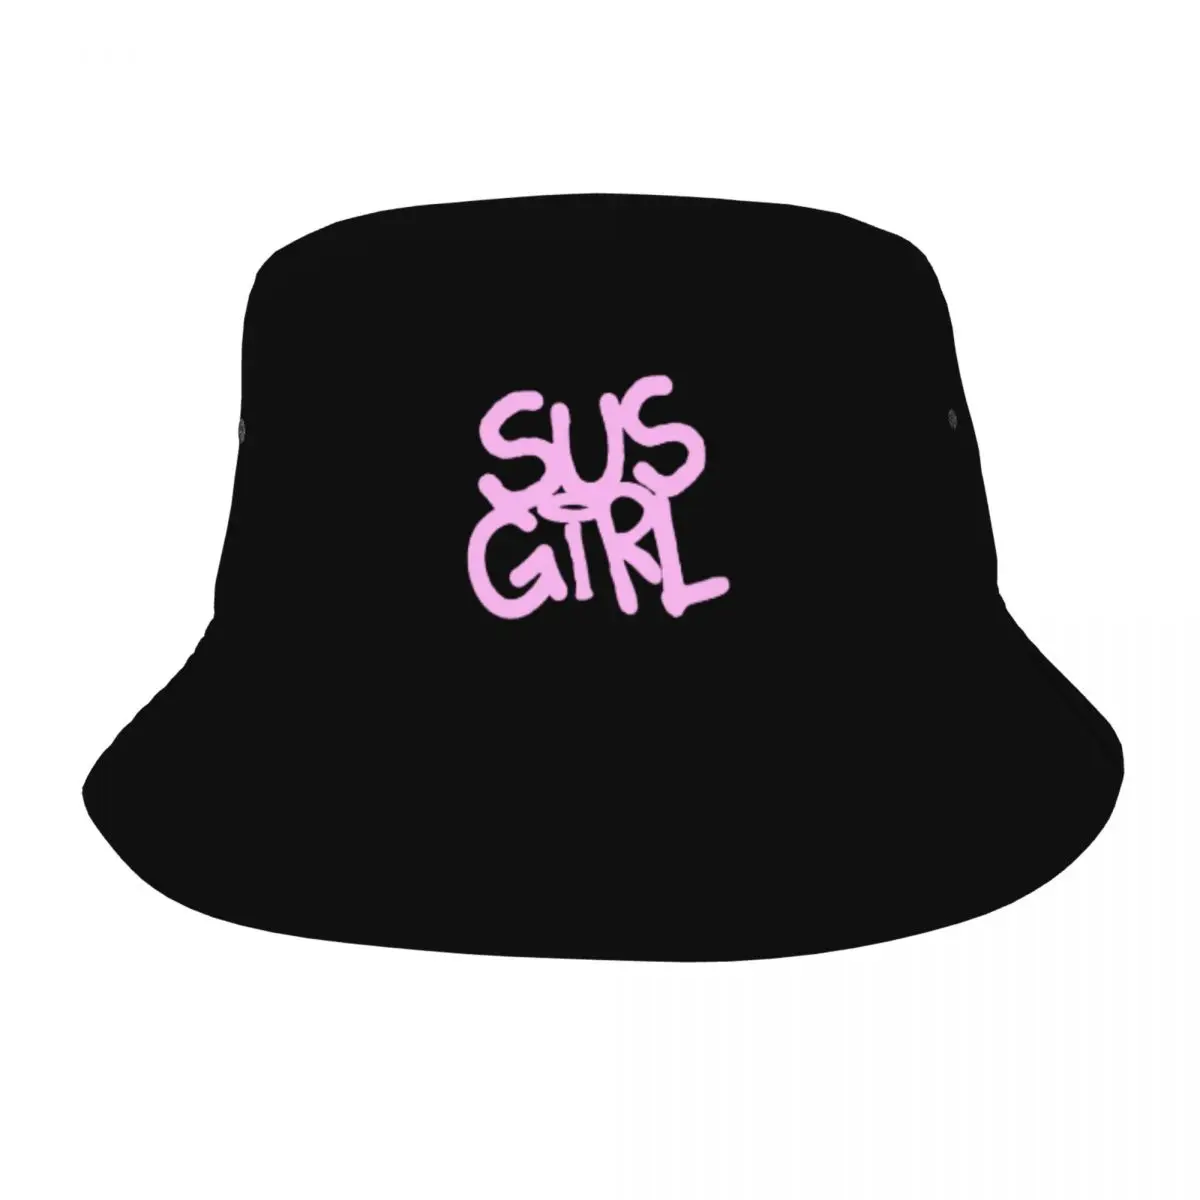 Уличная панама в стиле SUS GIRL Lil PEEP, кепки-бобы, хлопковая рыбацкая кепка унисекс, реверсивная рыболовная шляпа Sun